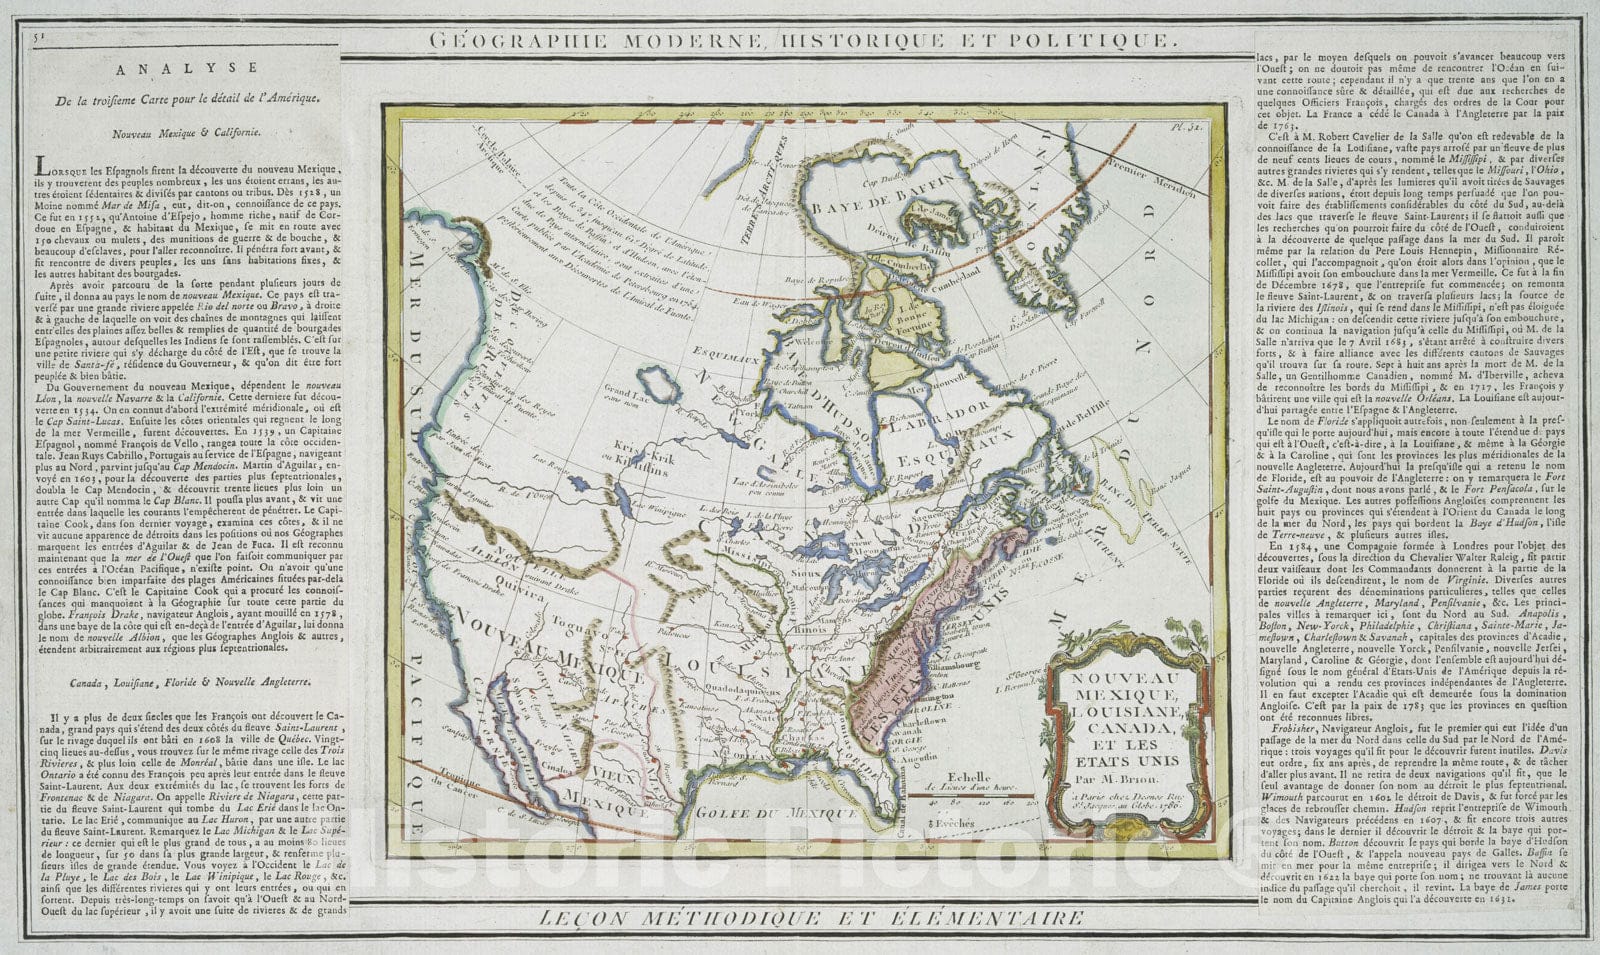 Historical Map, 1786 Nouveau Mexique, Louisiane, Canada, et les Etats UNIS, Vintage Wall Art